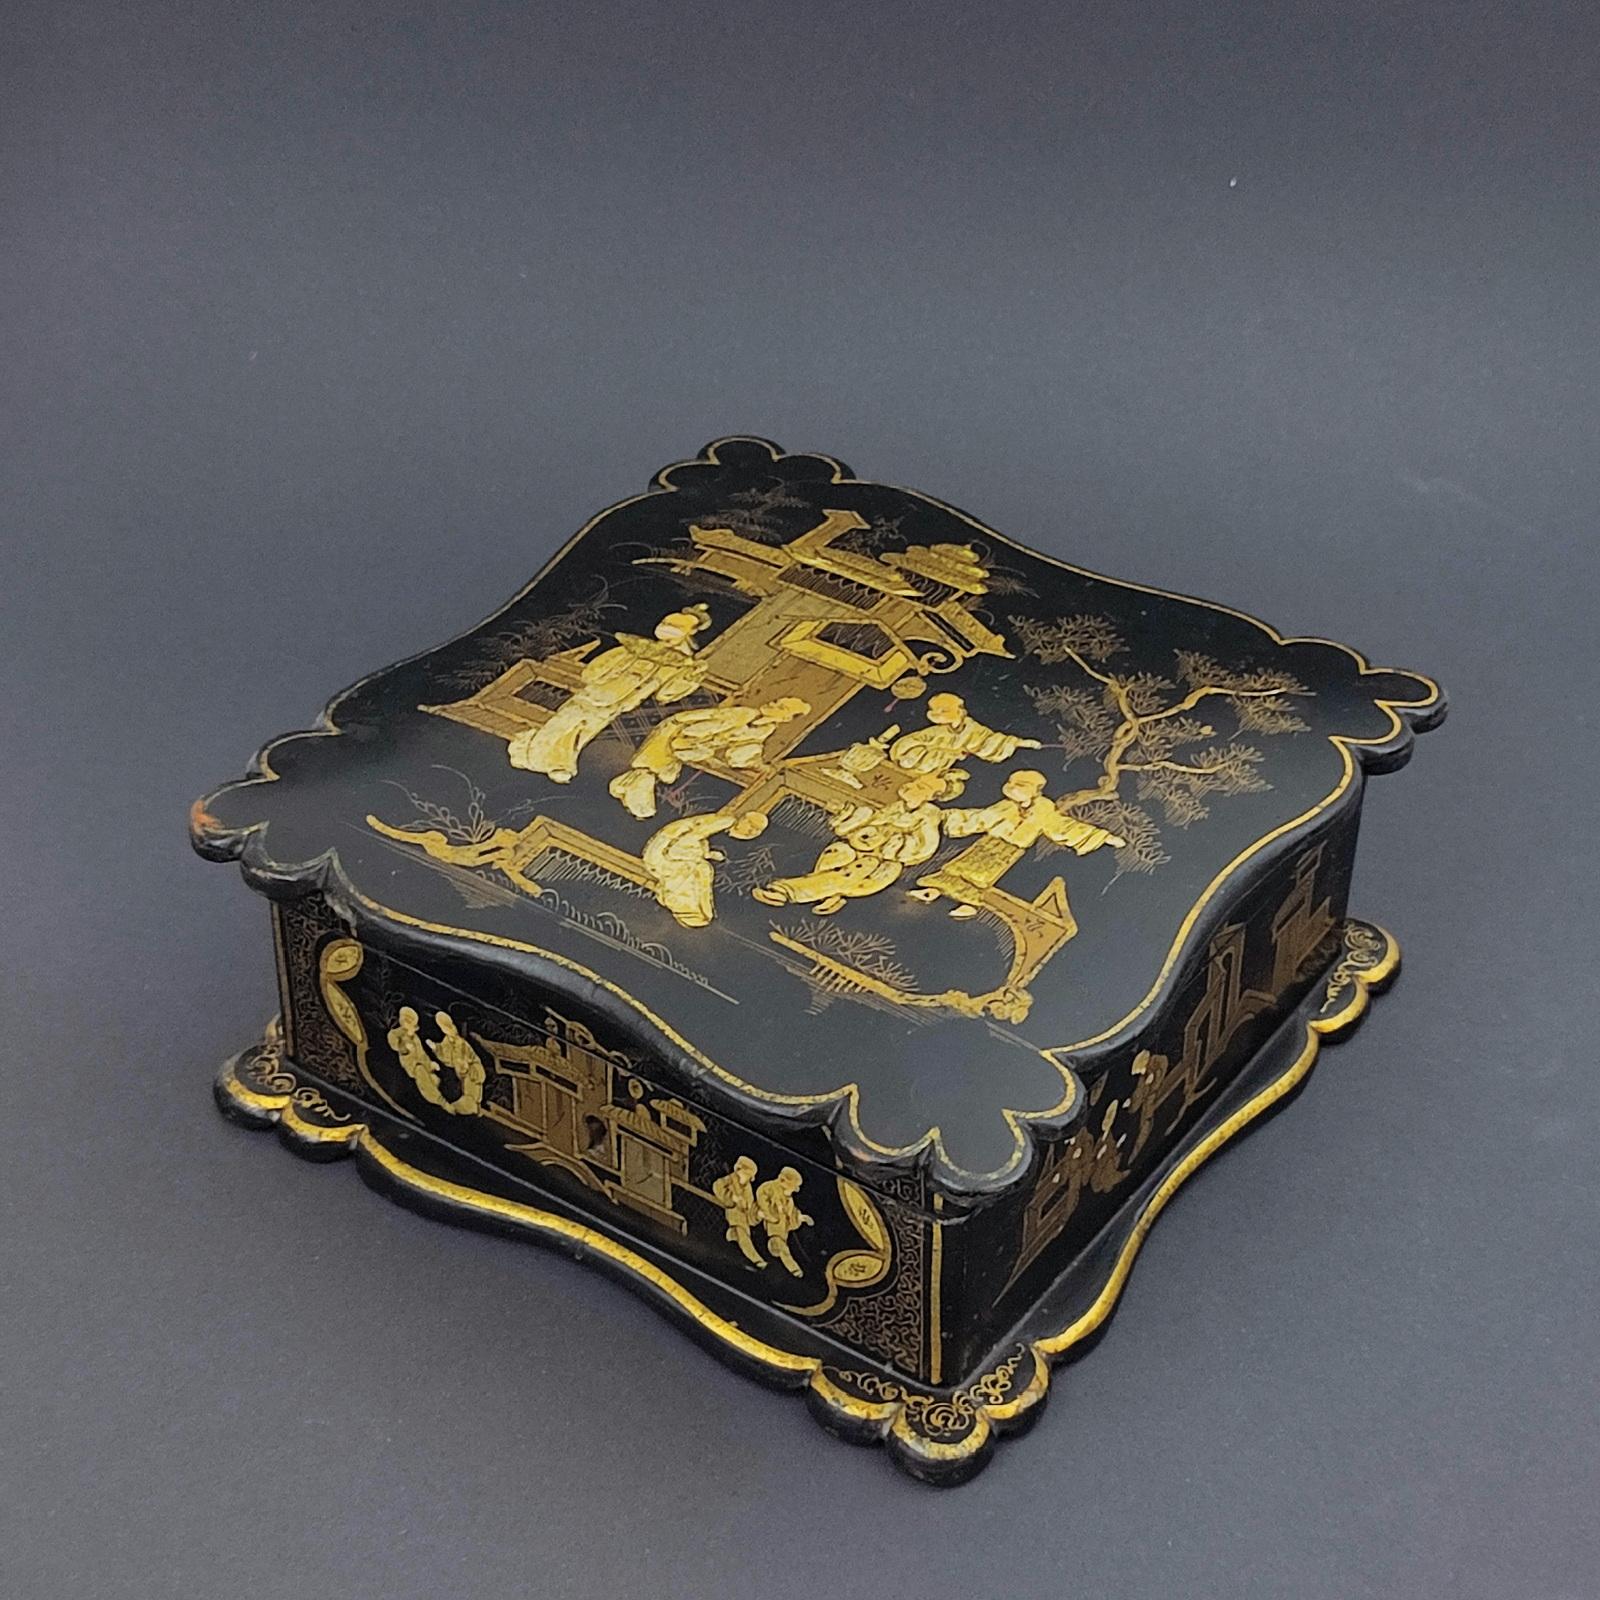 Boîte à bijoux Napoléon III en laque noire à décor asiatique, 19e siècle.
Boîte à bijoux carrée à bords striés, décorée de courtisans en or dans le palais, sur fond de laque noire. Intérieur paddé en soie rose.

Période Napoléon III.

Mesures :